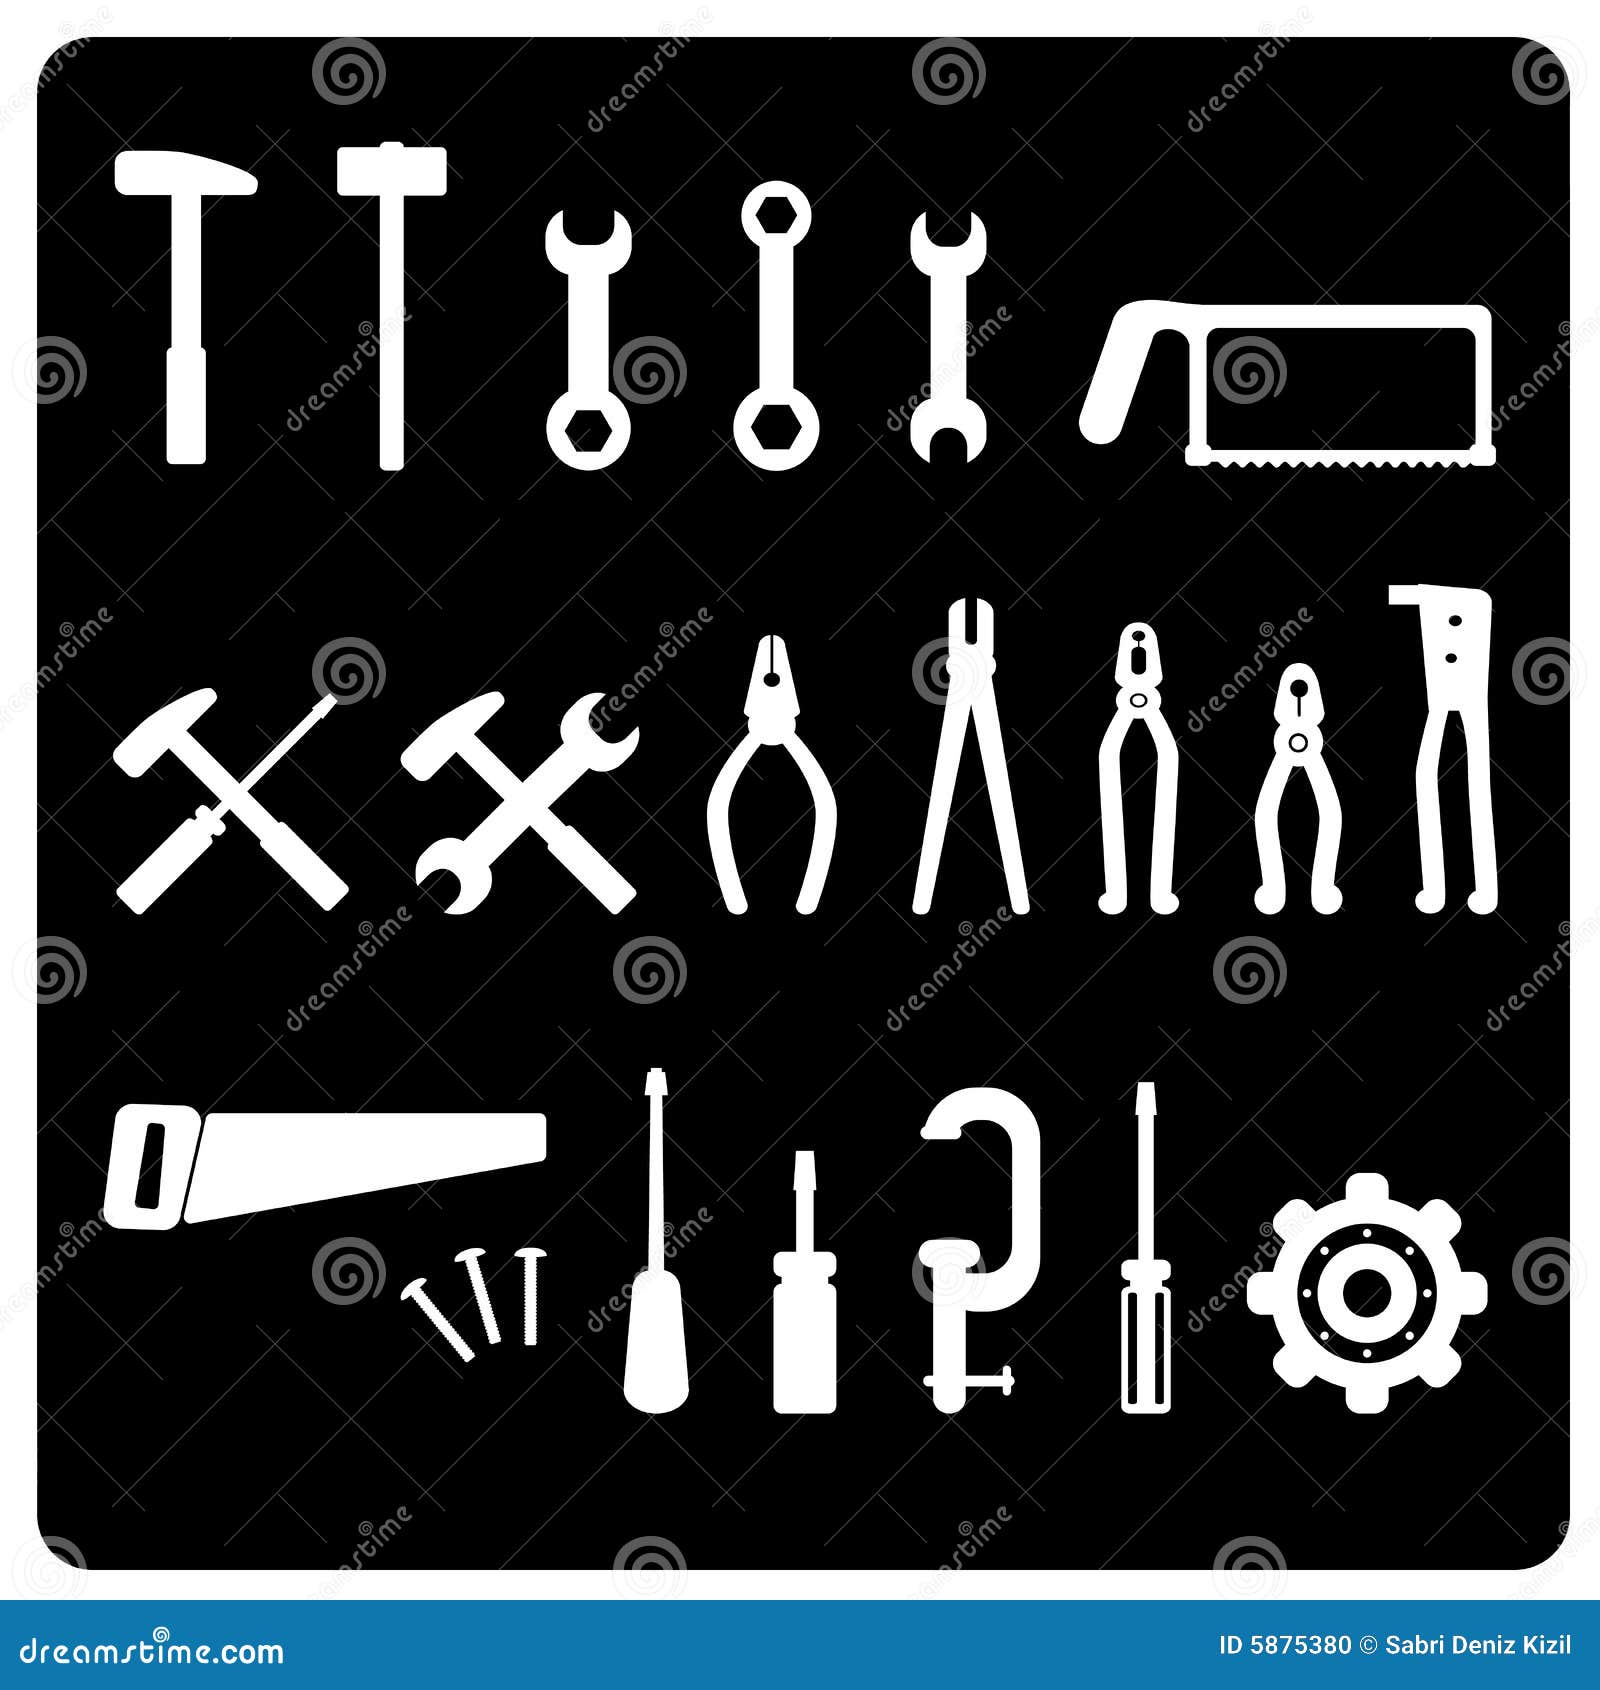 tool icon 